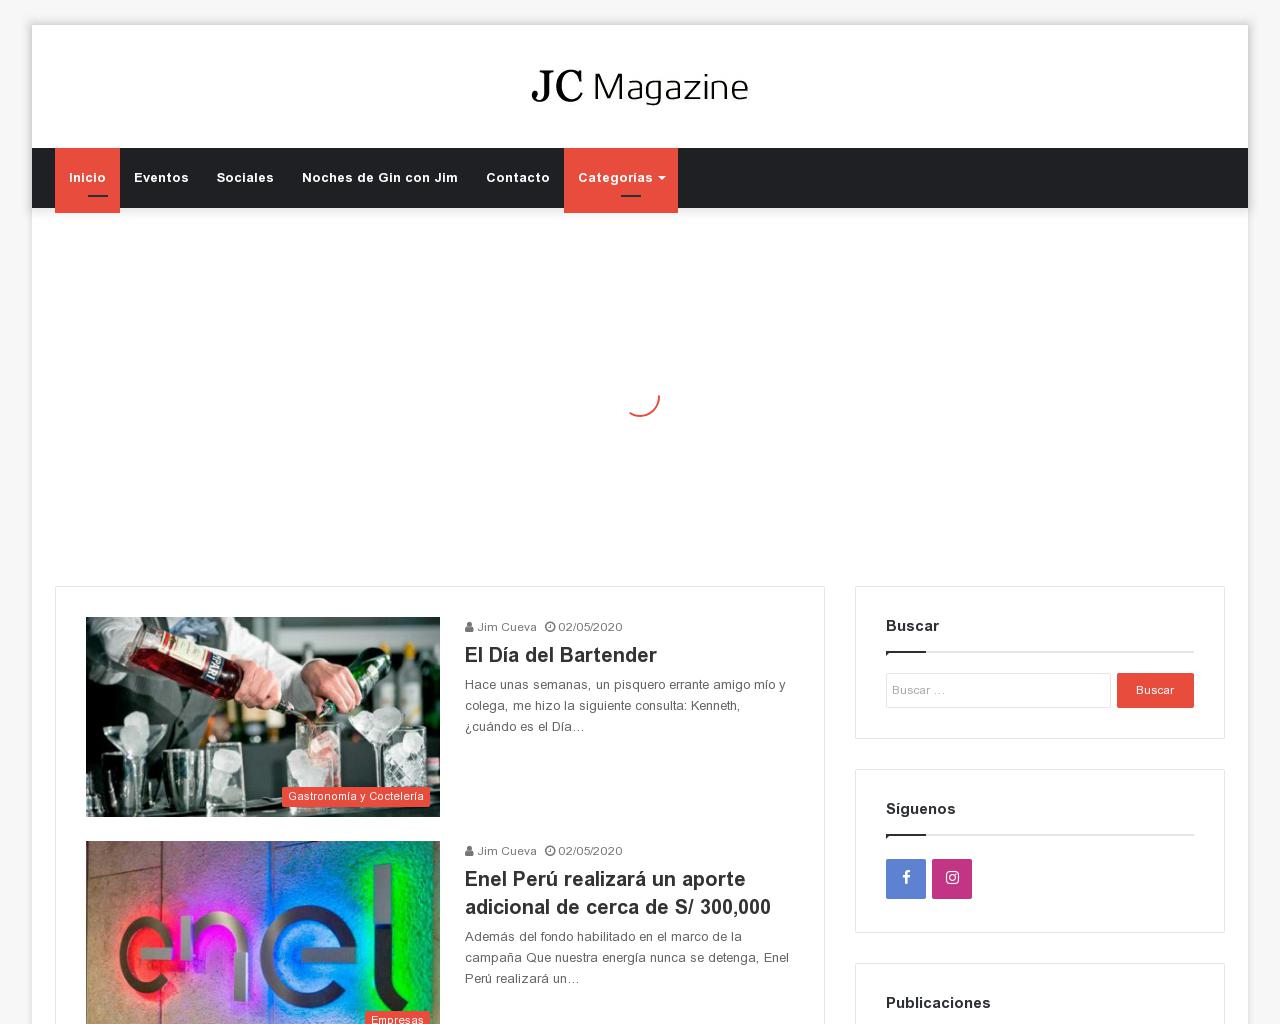 jcmagazine.com